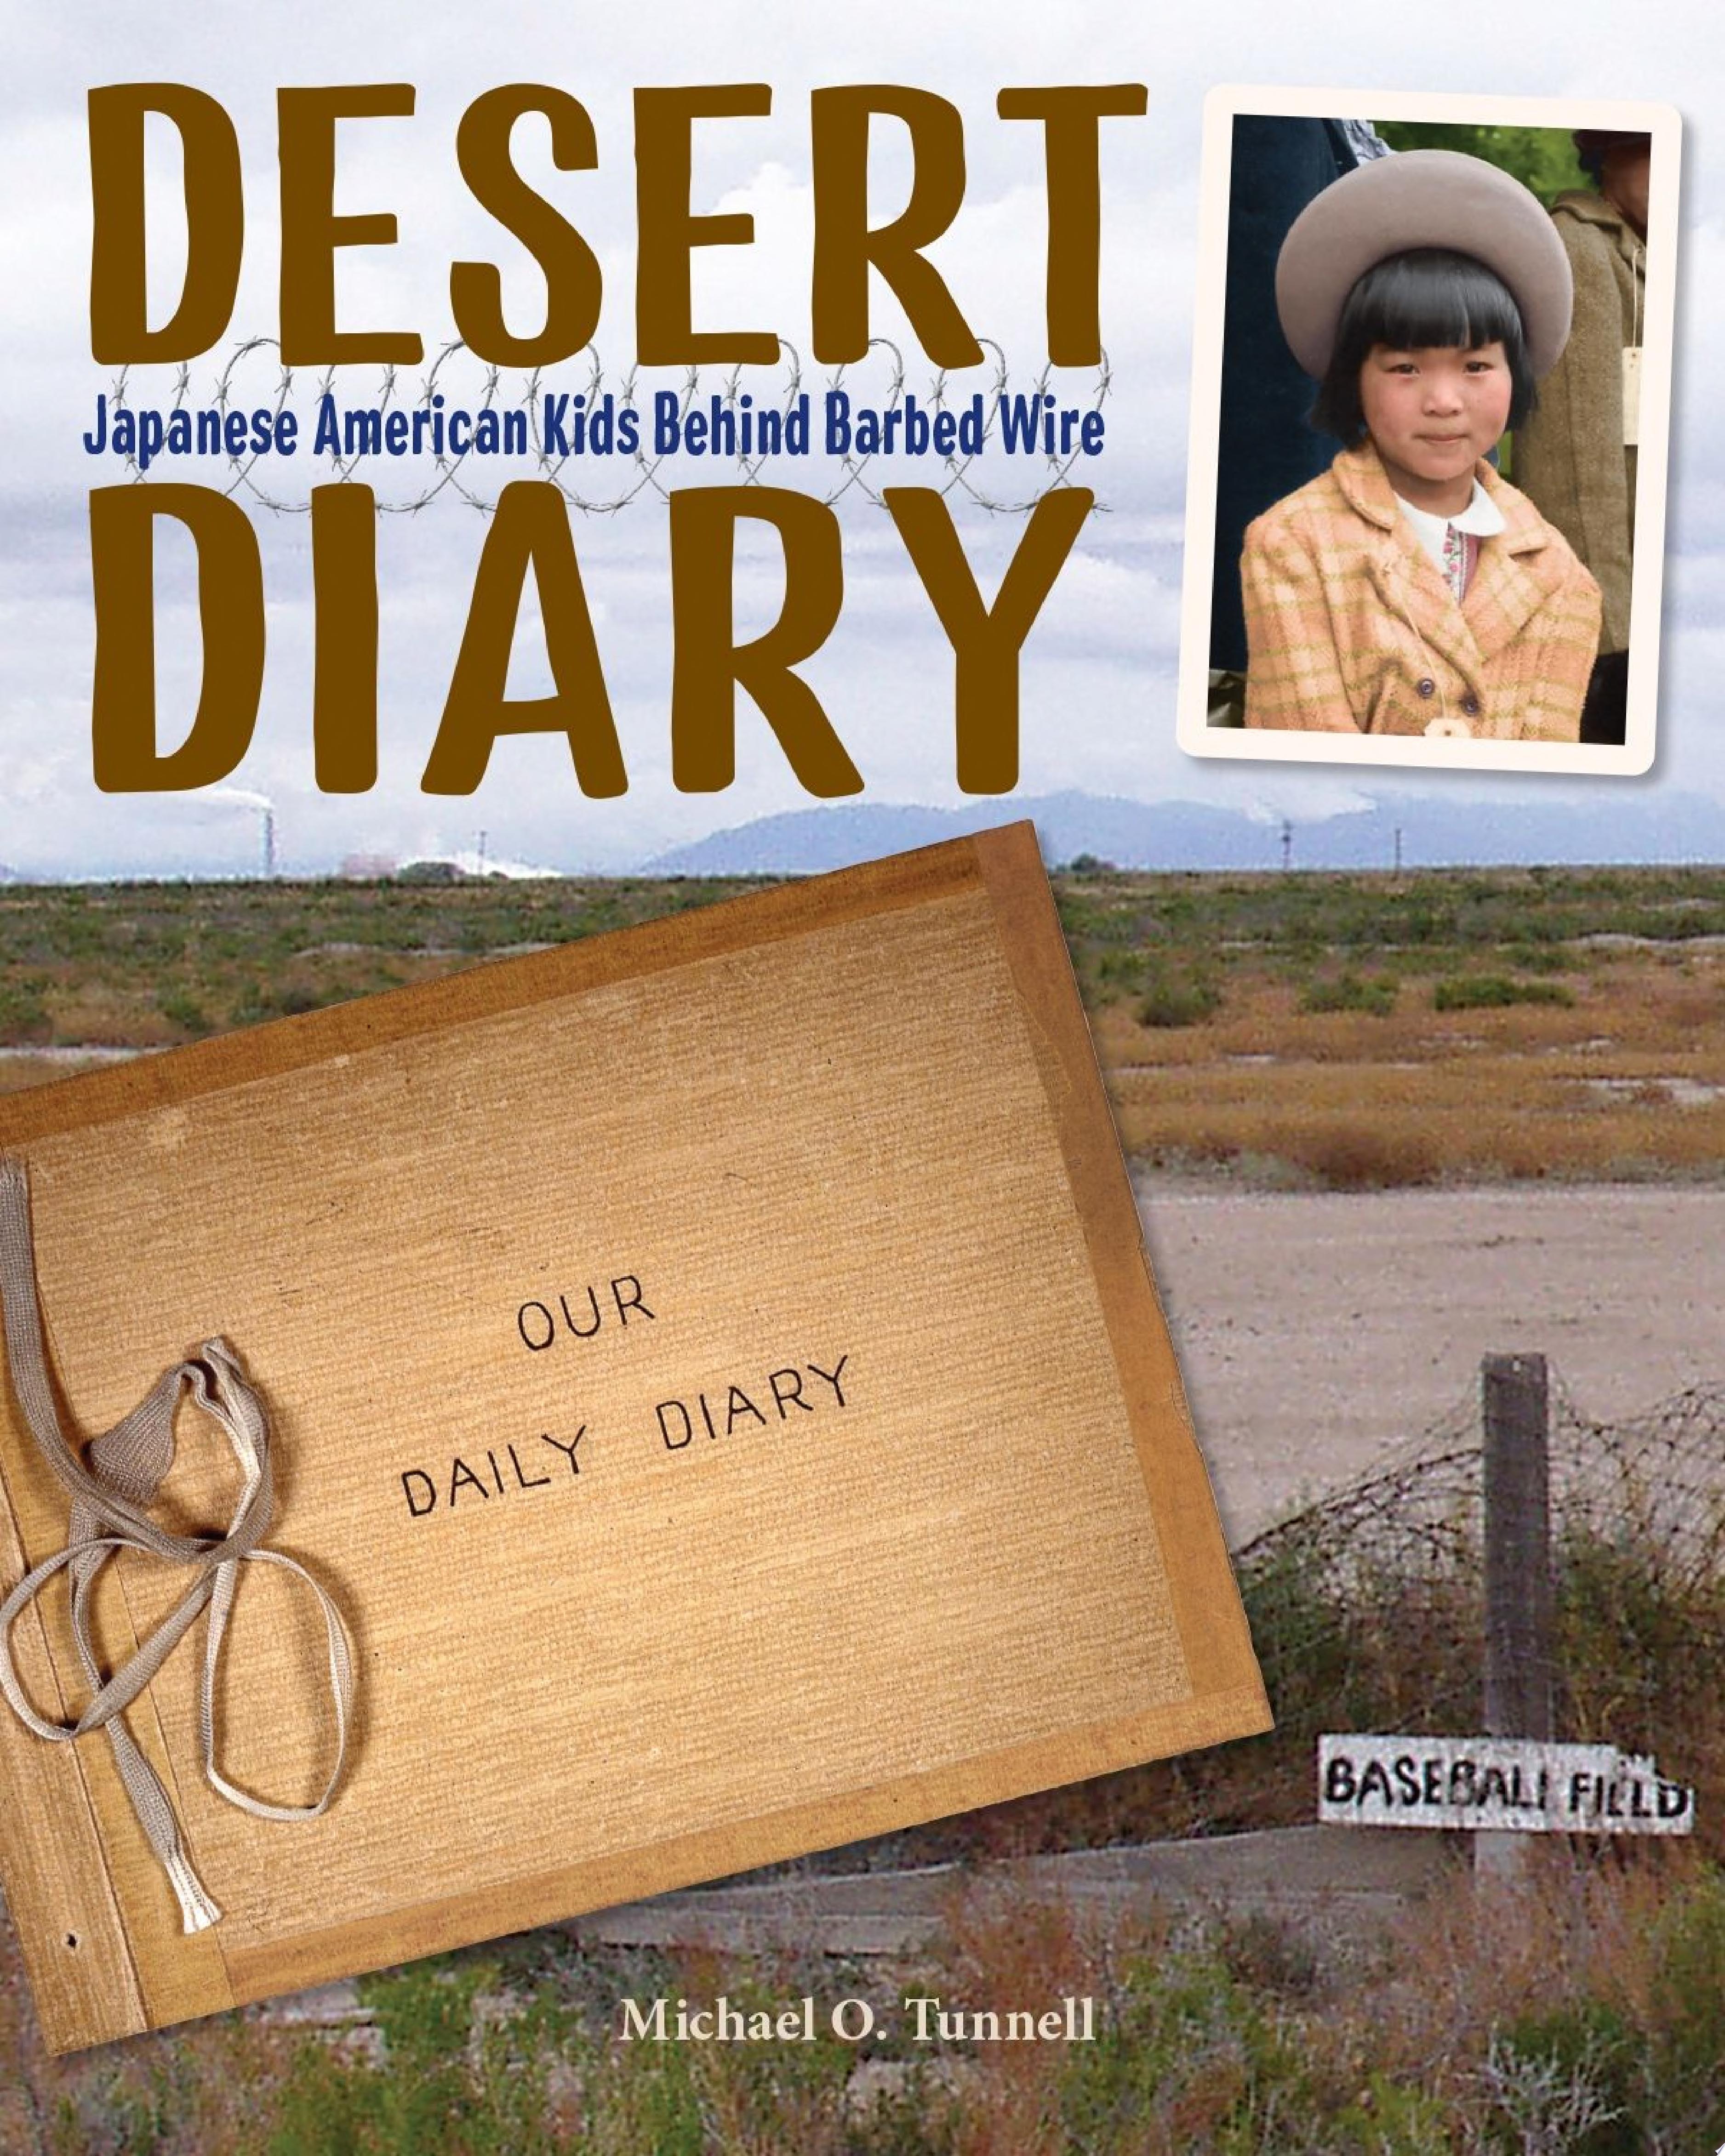 Image for "Desert Diary"